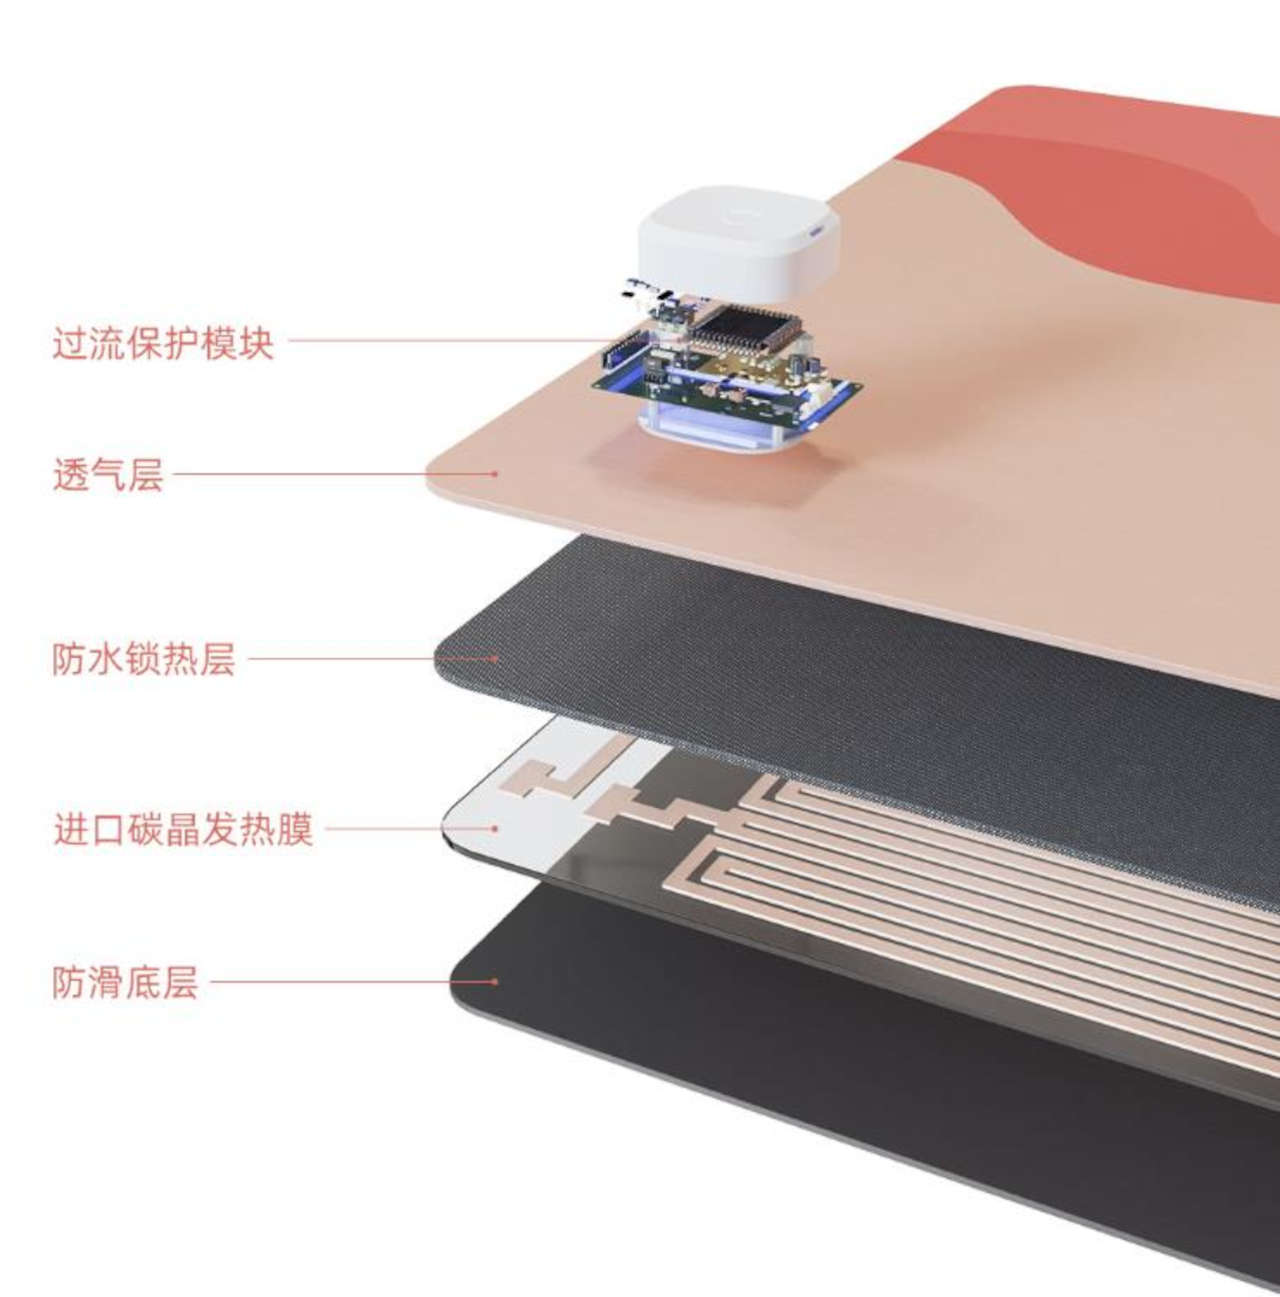 Il tappetino da PC Xiaomi YouPin vi scalda e potete averlo per meno di 20€  